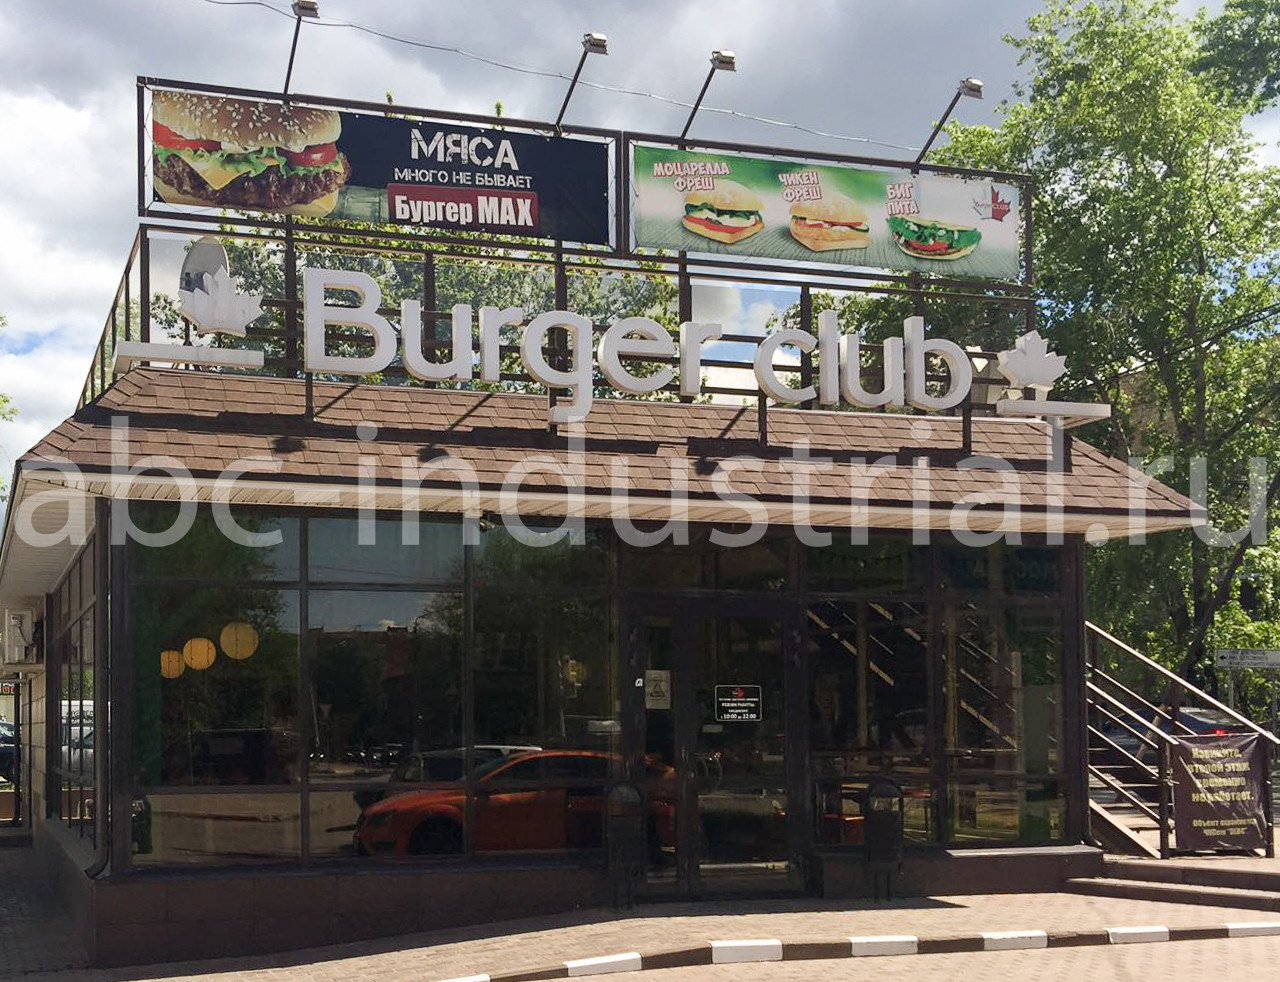 Ресторан быстрого питания "Burger Club"